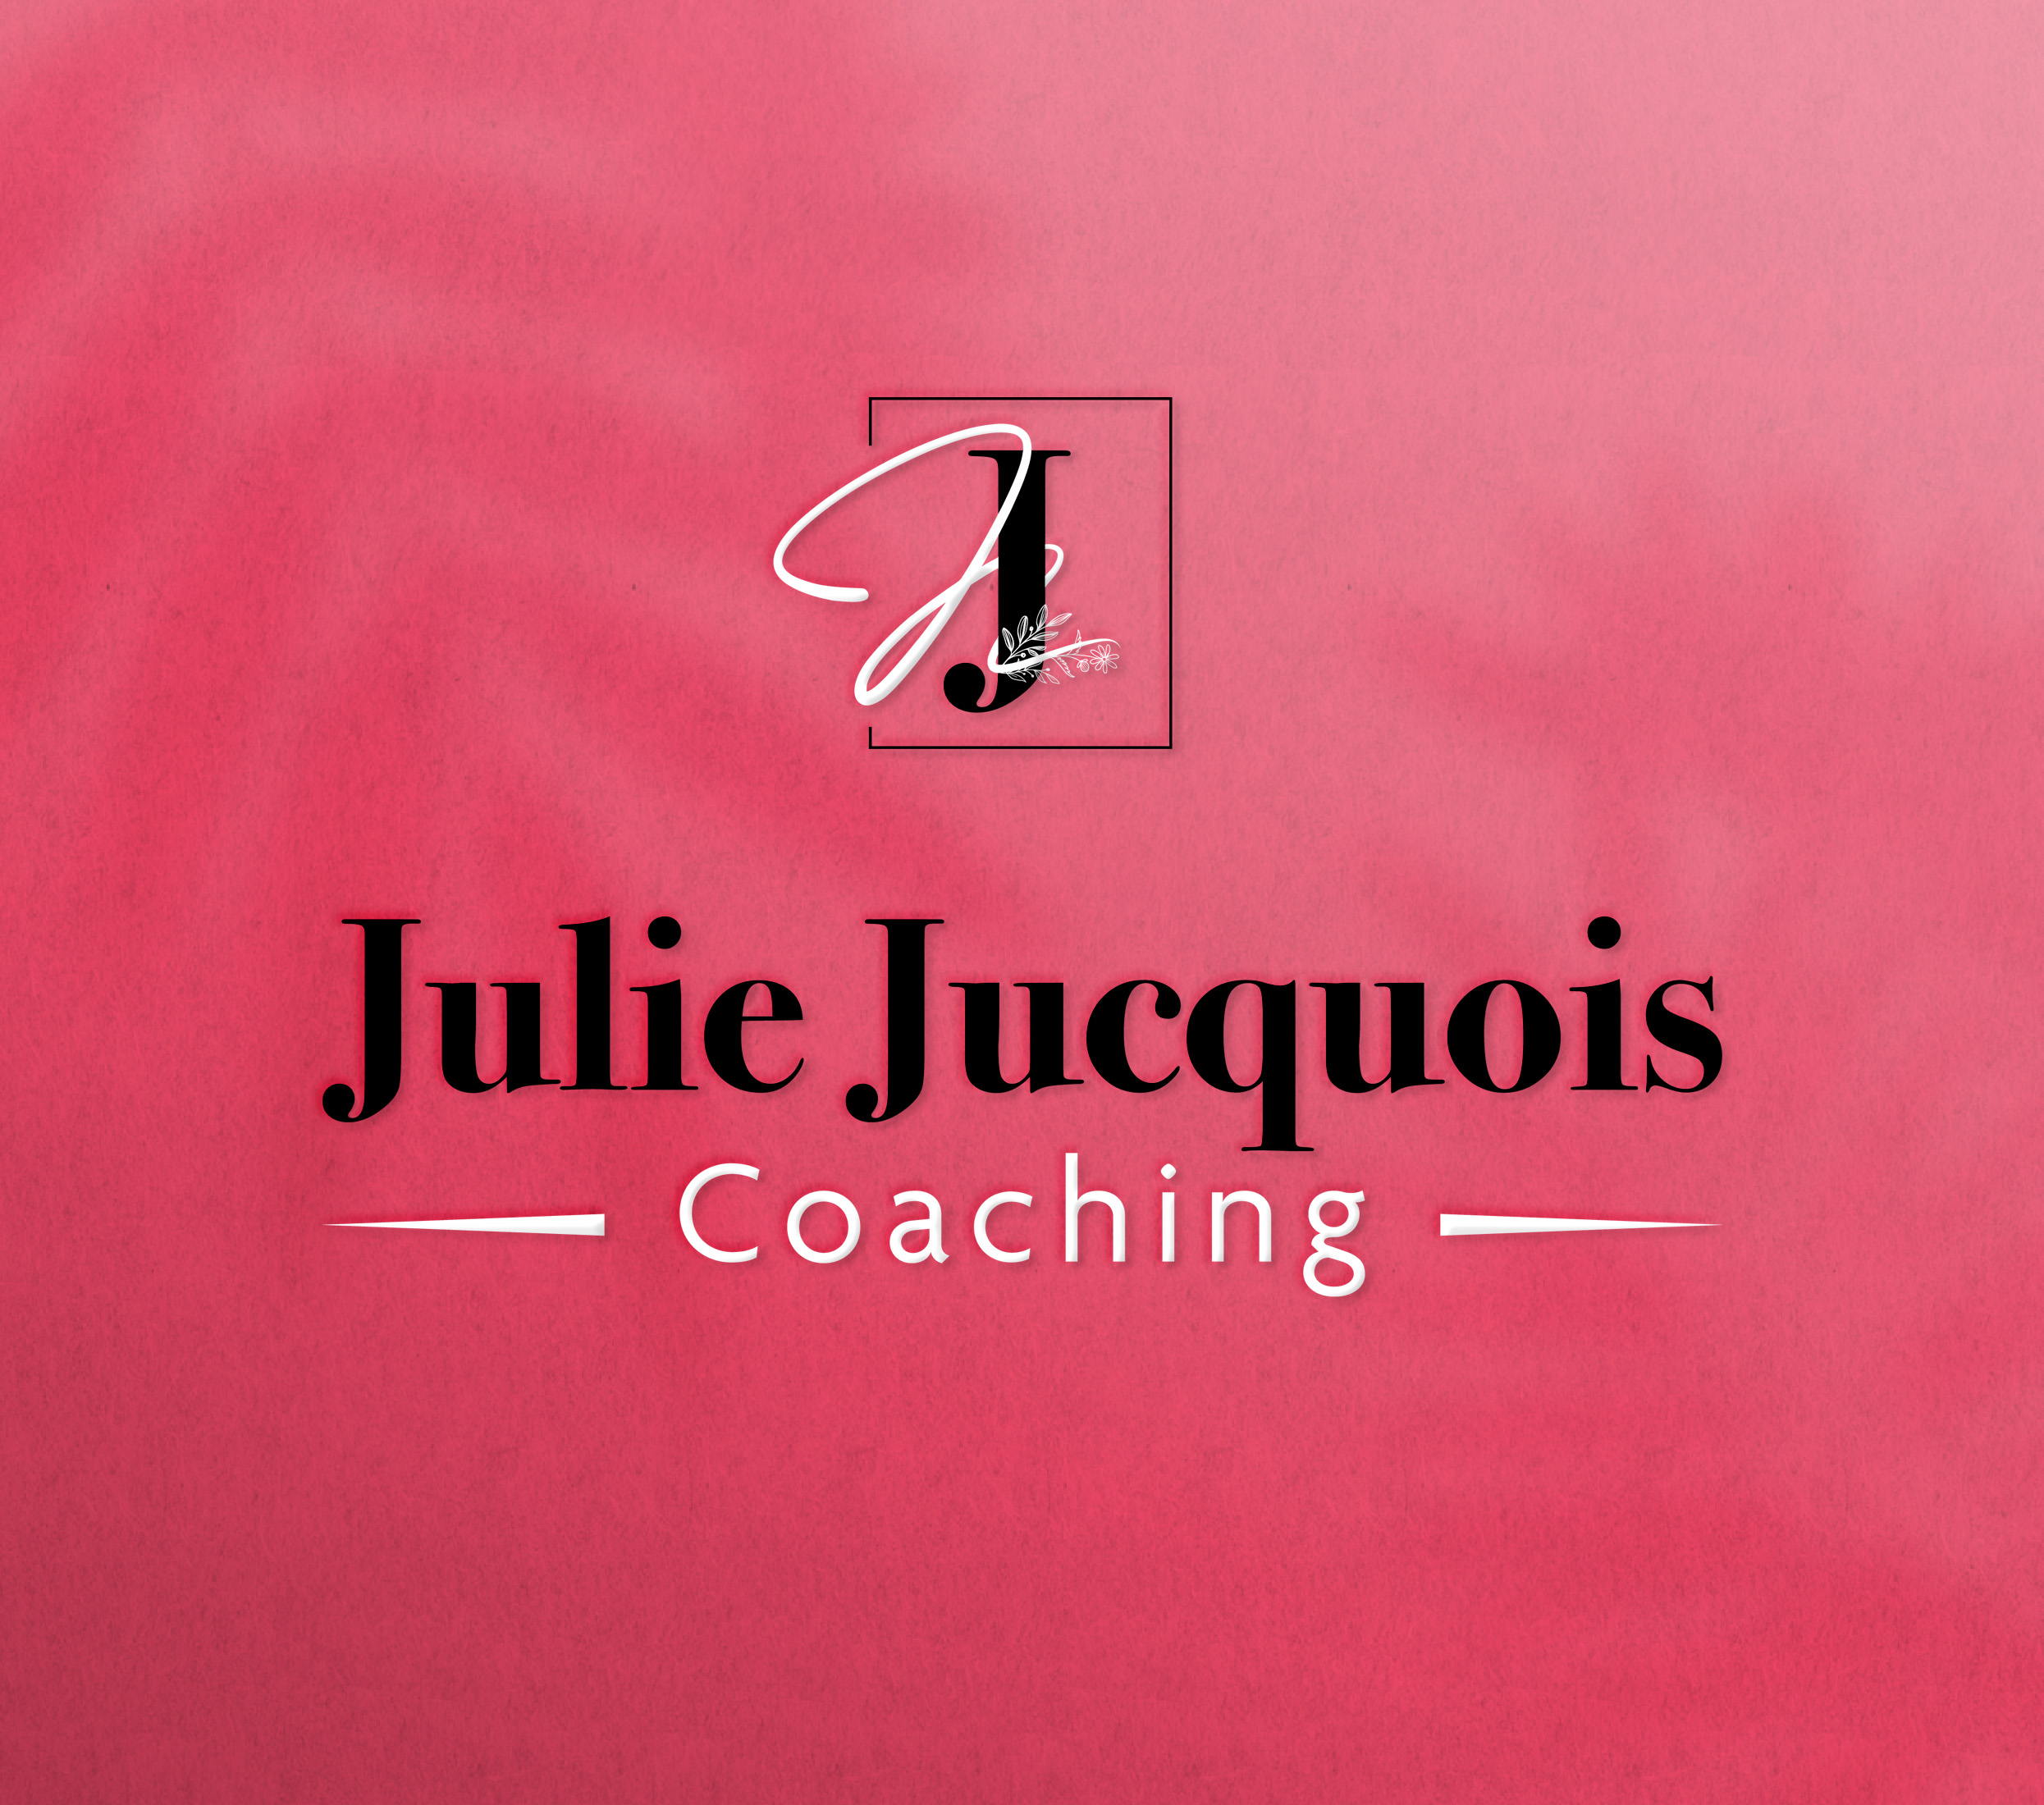 JJ-Coaching